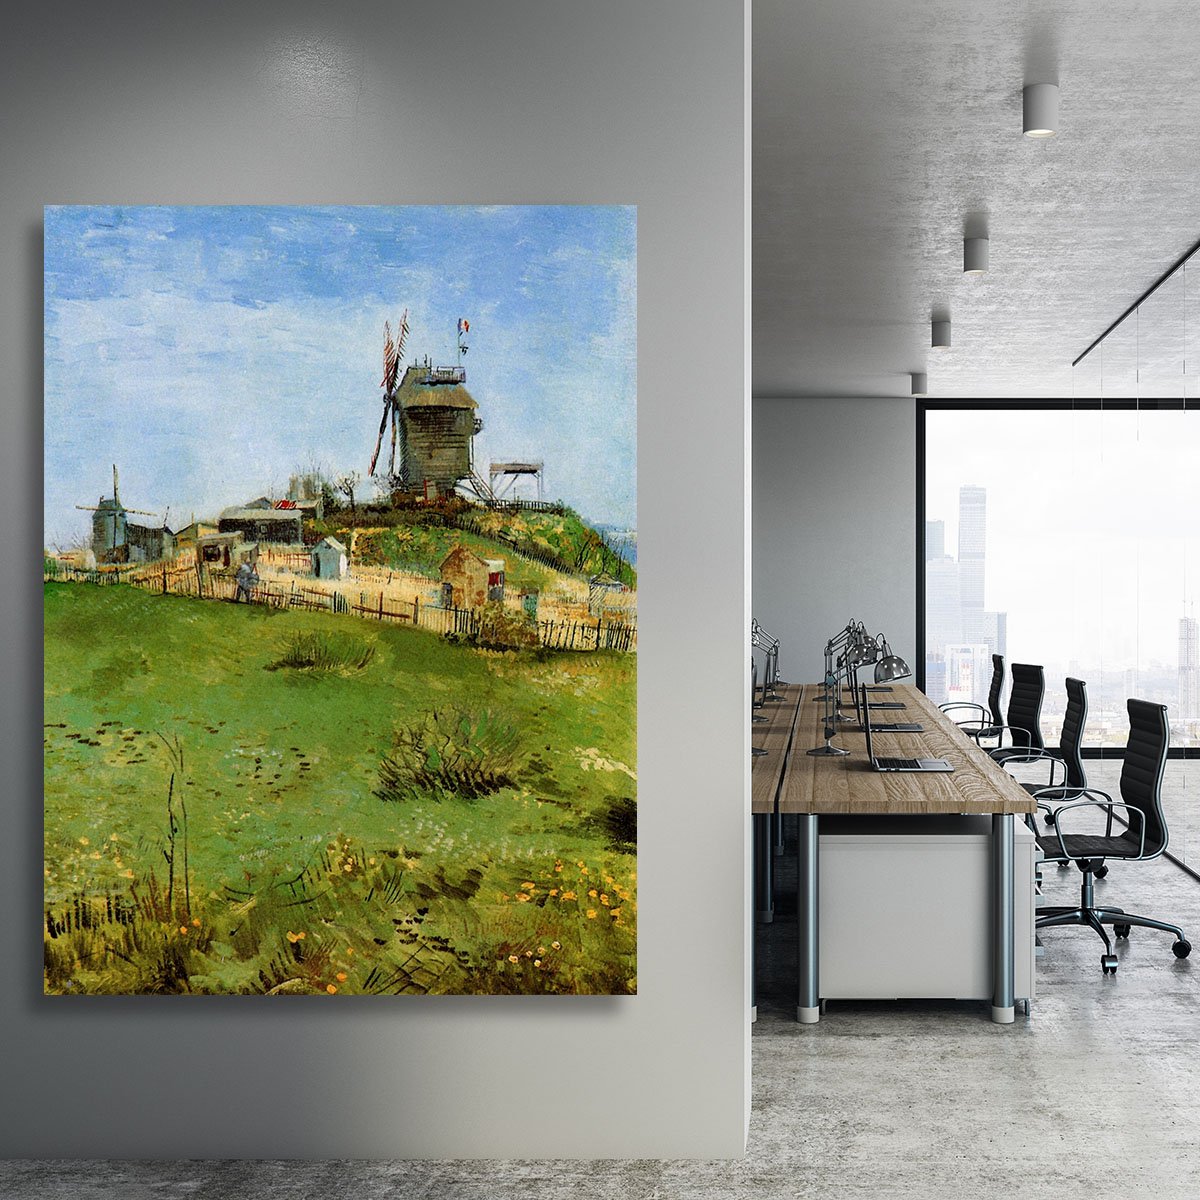 Le Moulin de la Galette 4 by Van Gogh Canvas Print or Poster